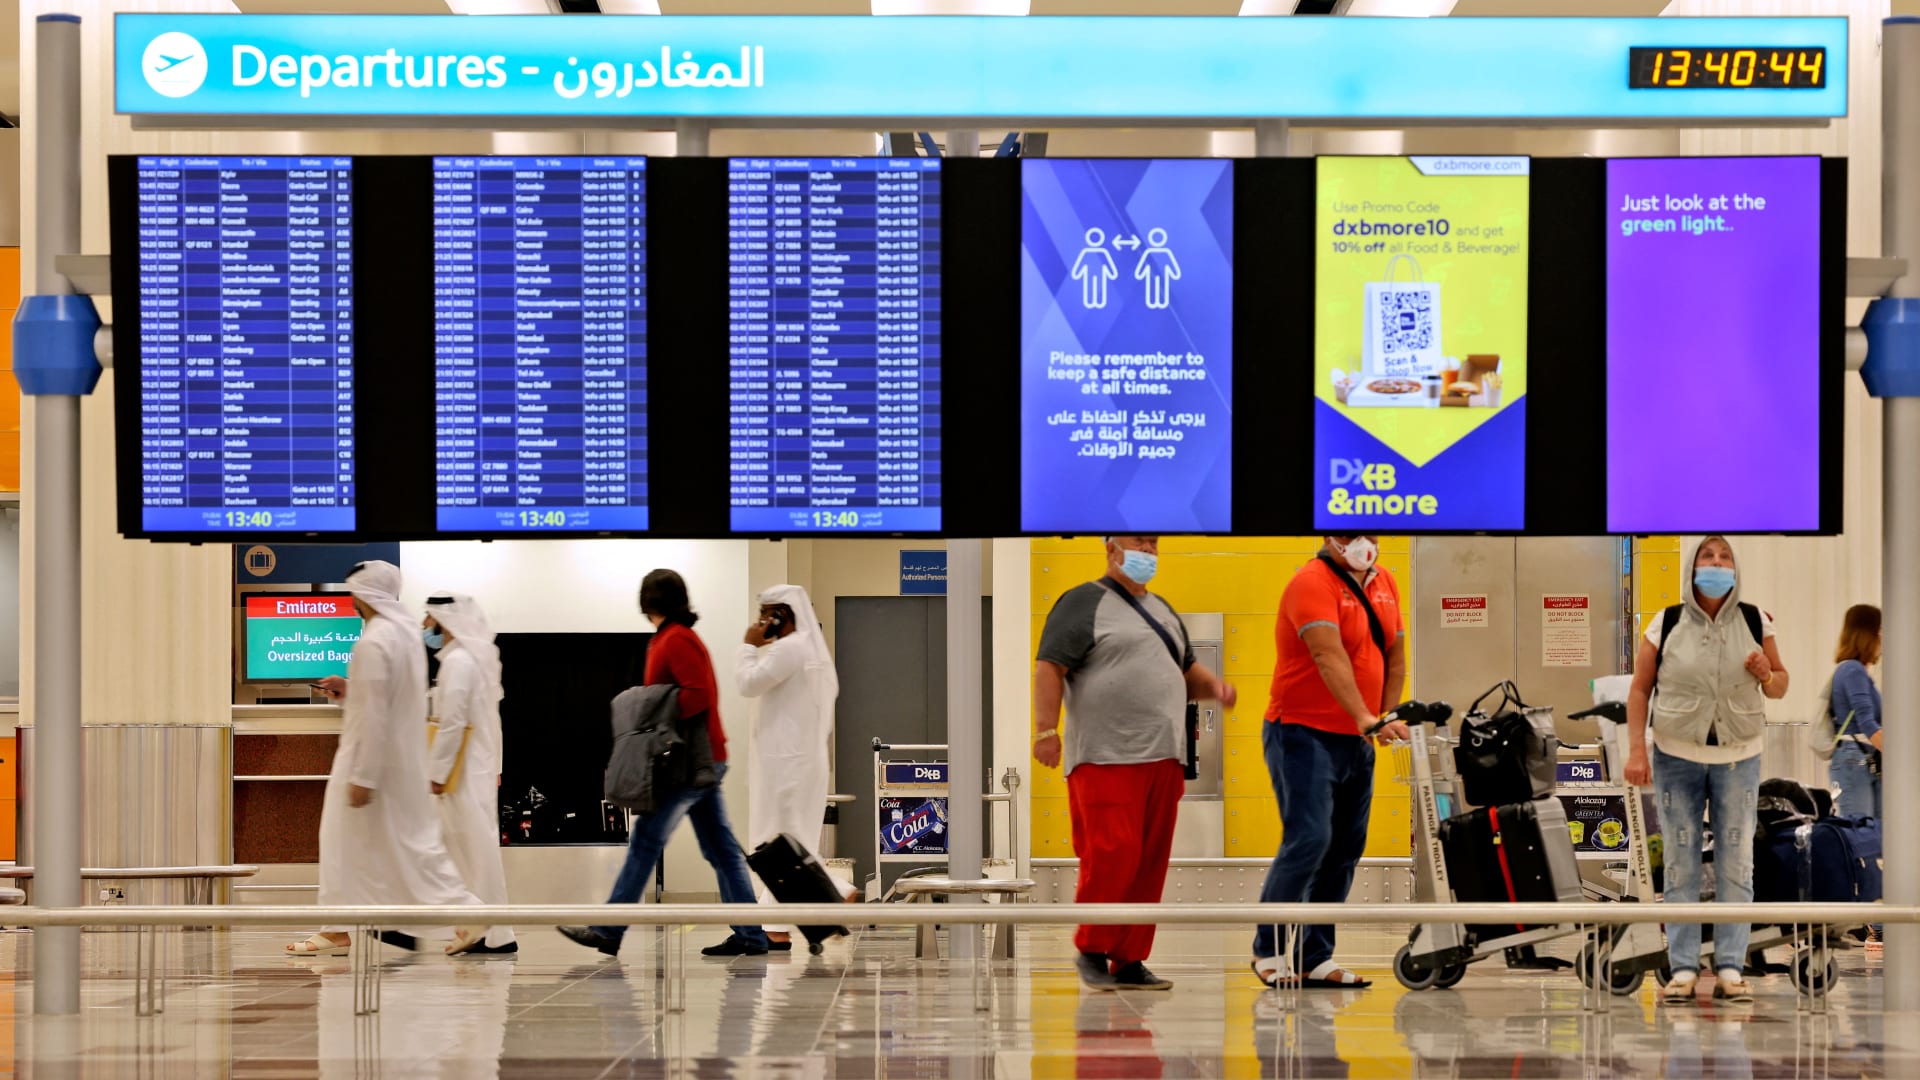 مطار دبي الدولي يحتل المرتبة الثانية في قائمة أكثر المطارات ازدحامًا 33